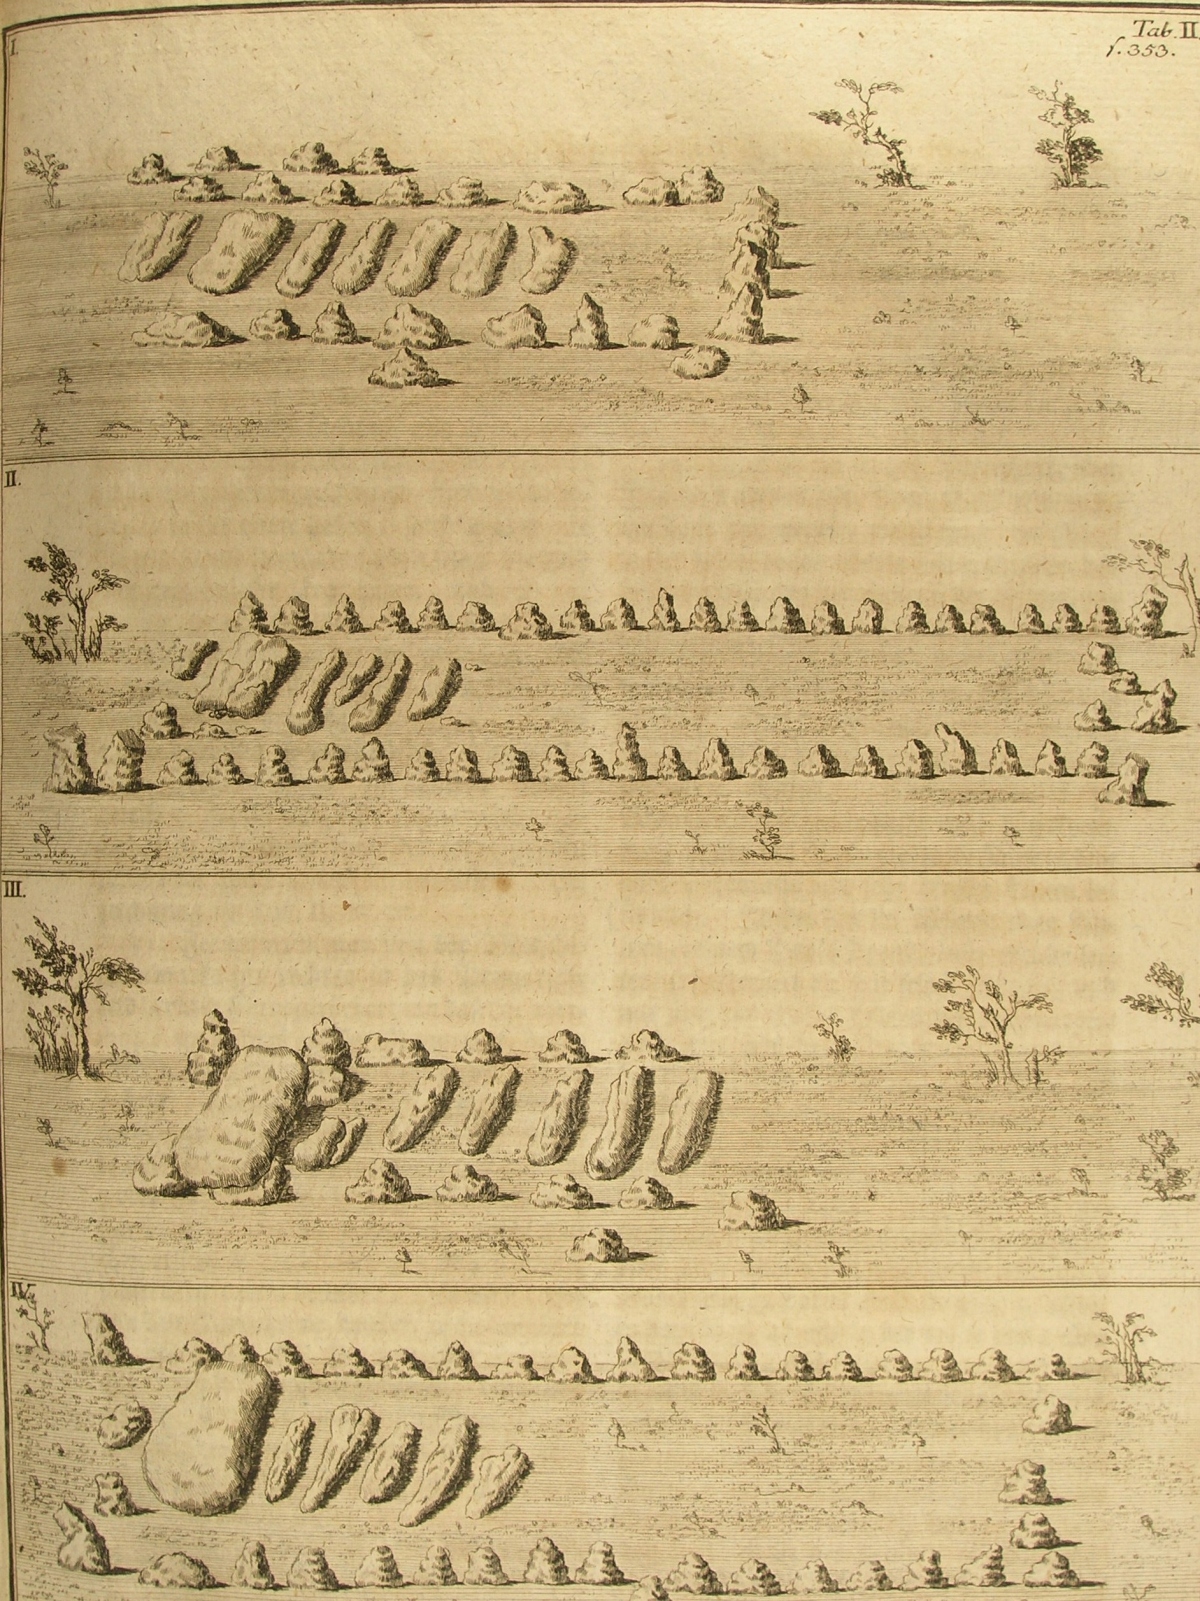 Die Großsteingräber von Diesdorf nach Johann Christoph Bekmann, Historische Beschreibung der Chur- und Mark Brandenburg, Band I, 1751